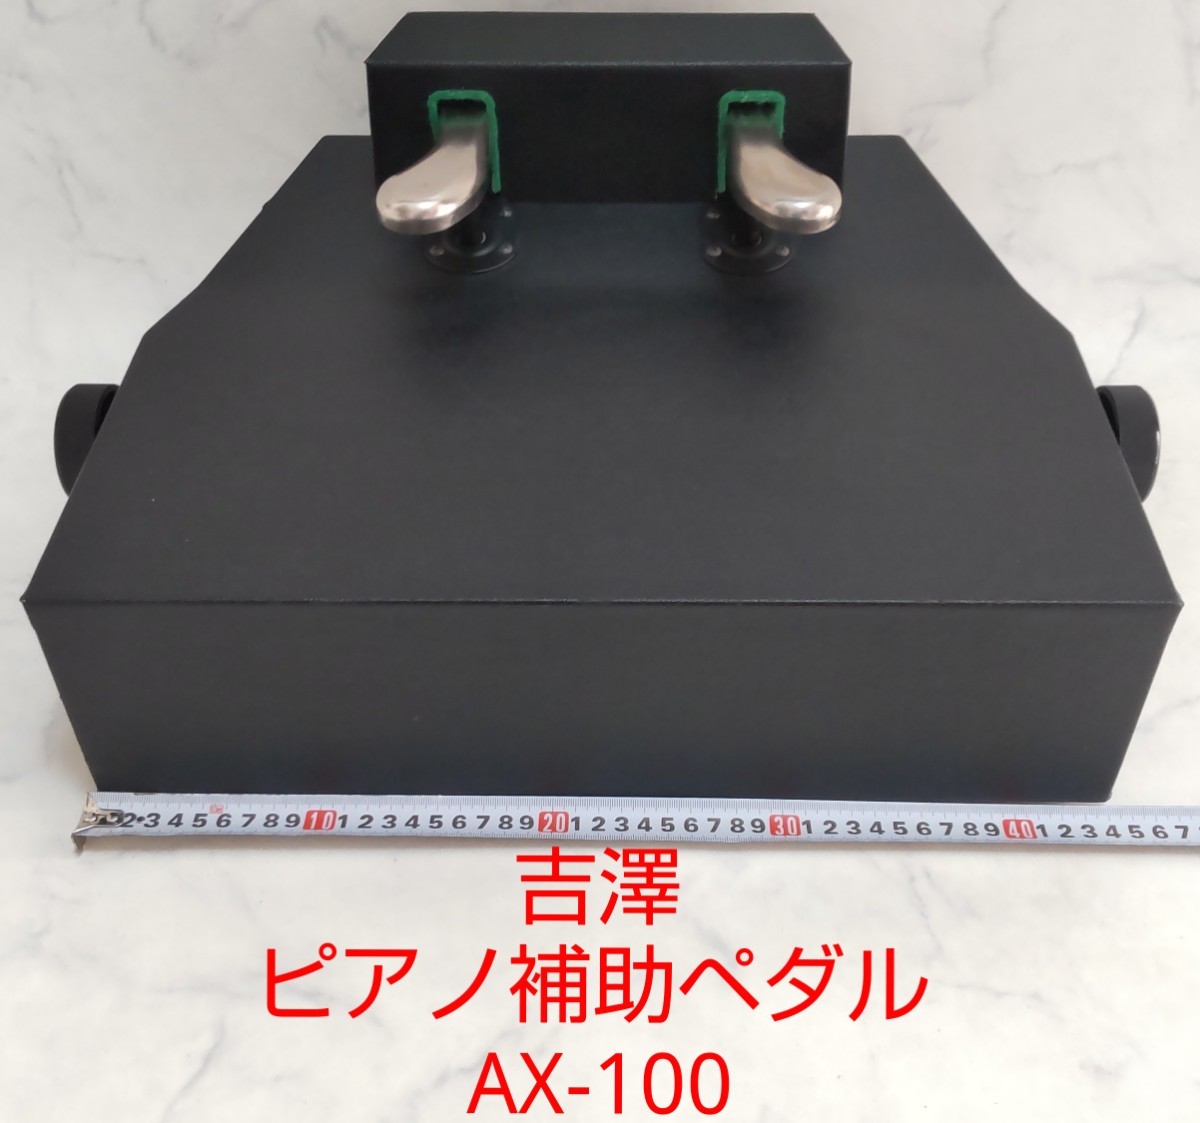 吉澤 ピーコック AX-100 ピアノ補助ペダル 足台 無段階昇降 ブラック 